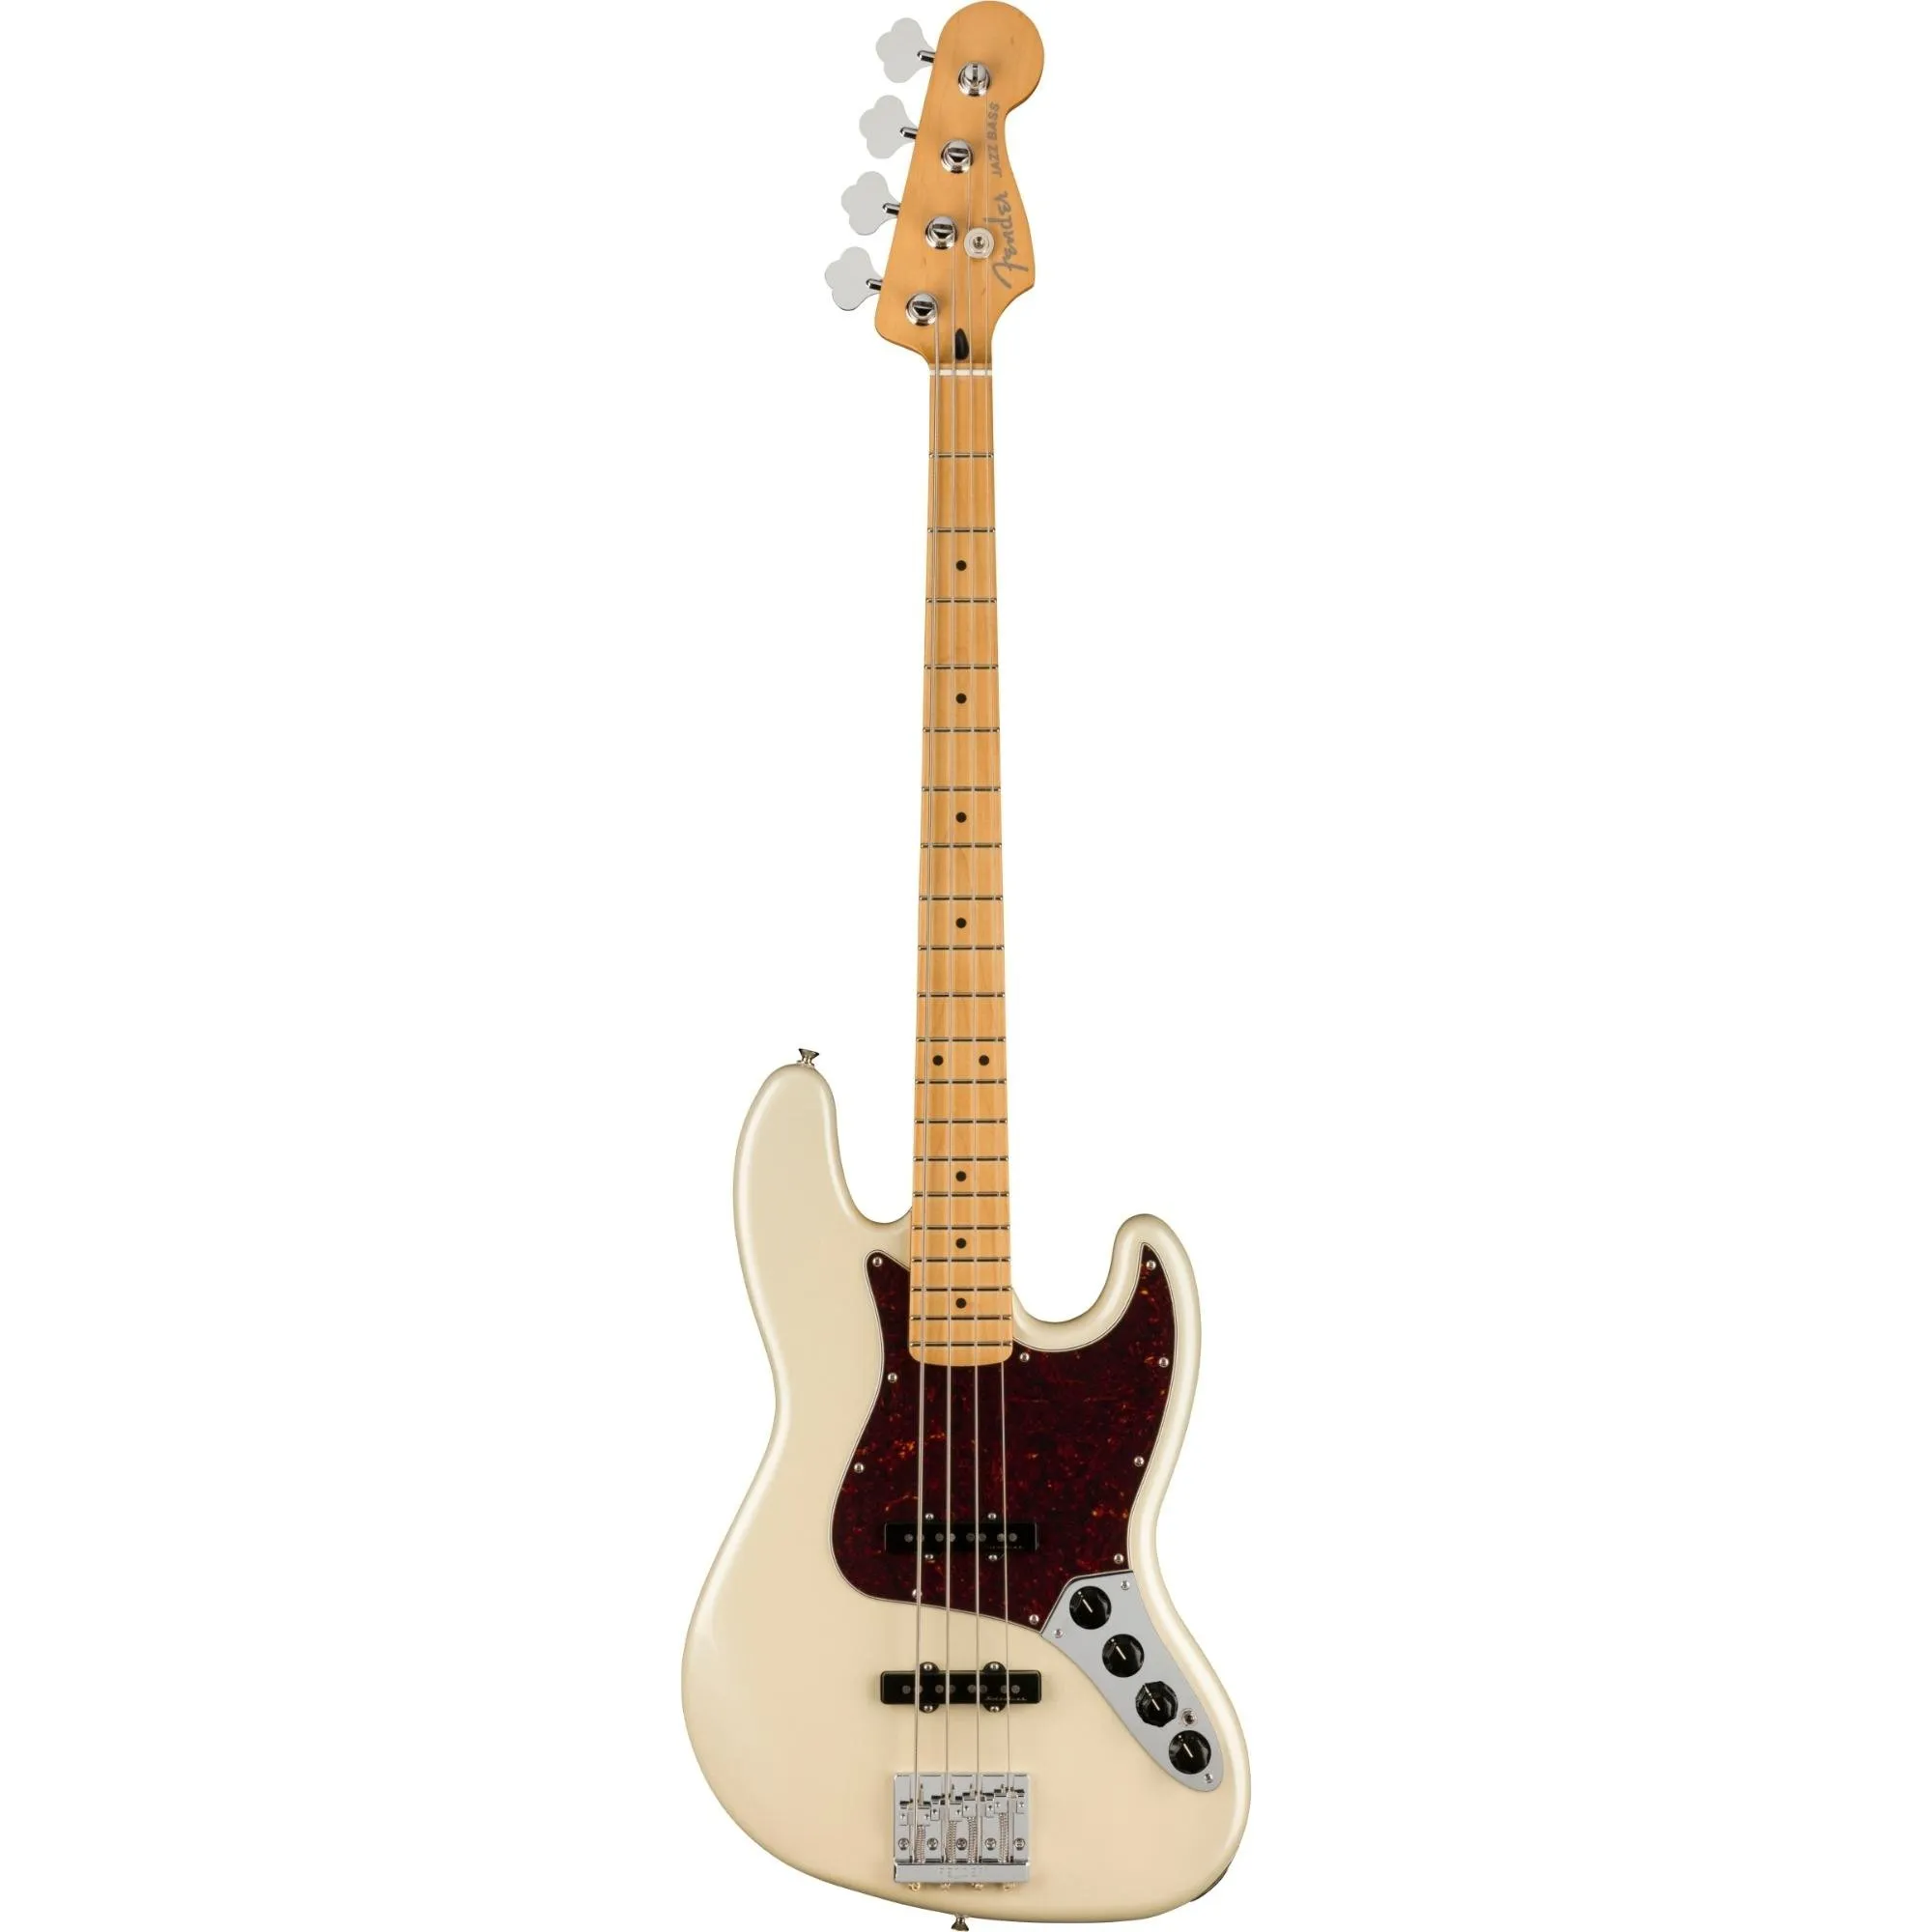 Contrabaixo Fender Player Plus Jazz Bass Olympic White com Deluxe GigBag por 8.999,00 à vista no boleto/pix ou parcele em até 12x sem juros. Compre na loja Mundomax!